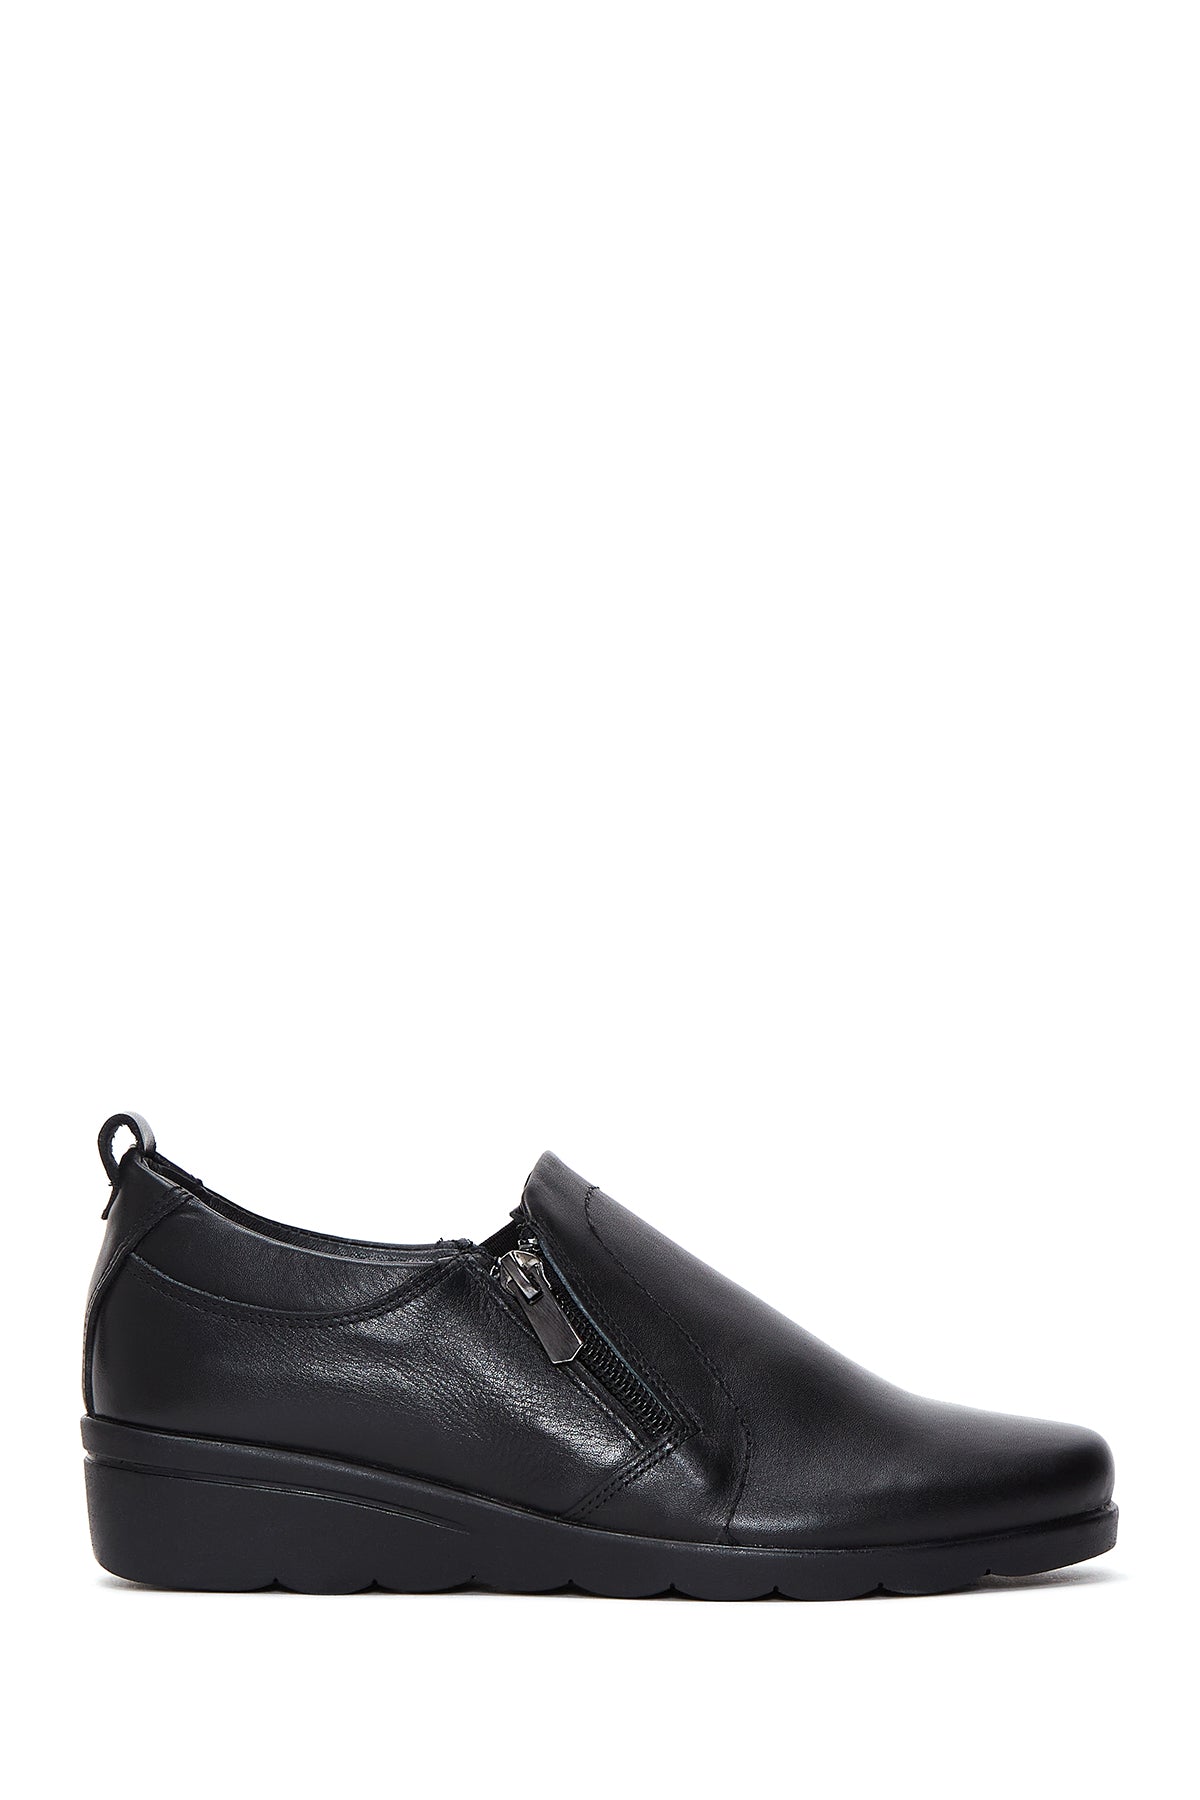 Kadın Siyah Deri Dolgu Topuklu Comfort Ayakkabı 23WFD410518 | Derimod